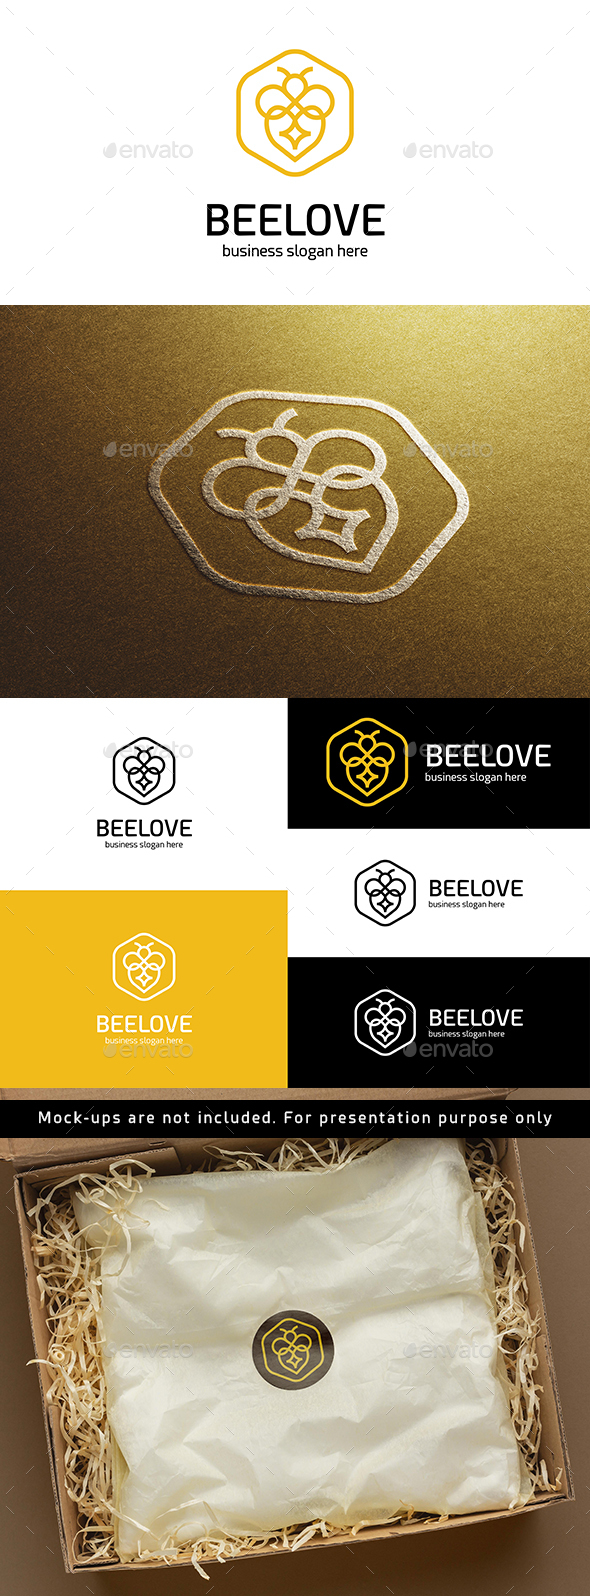 [DOWNLOAD]Bee Love Logo